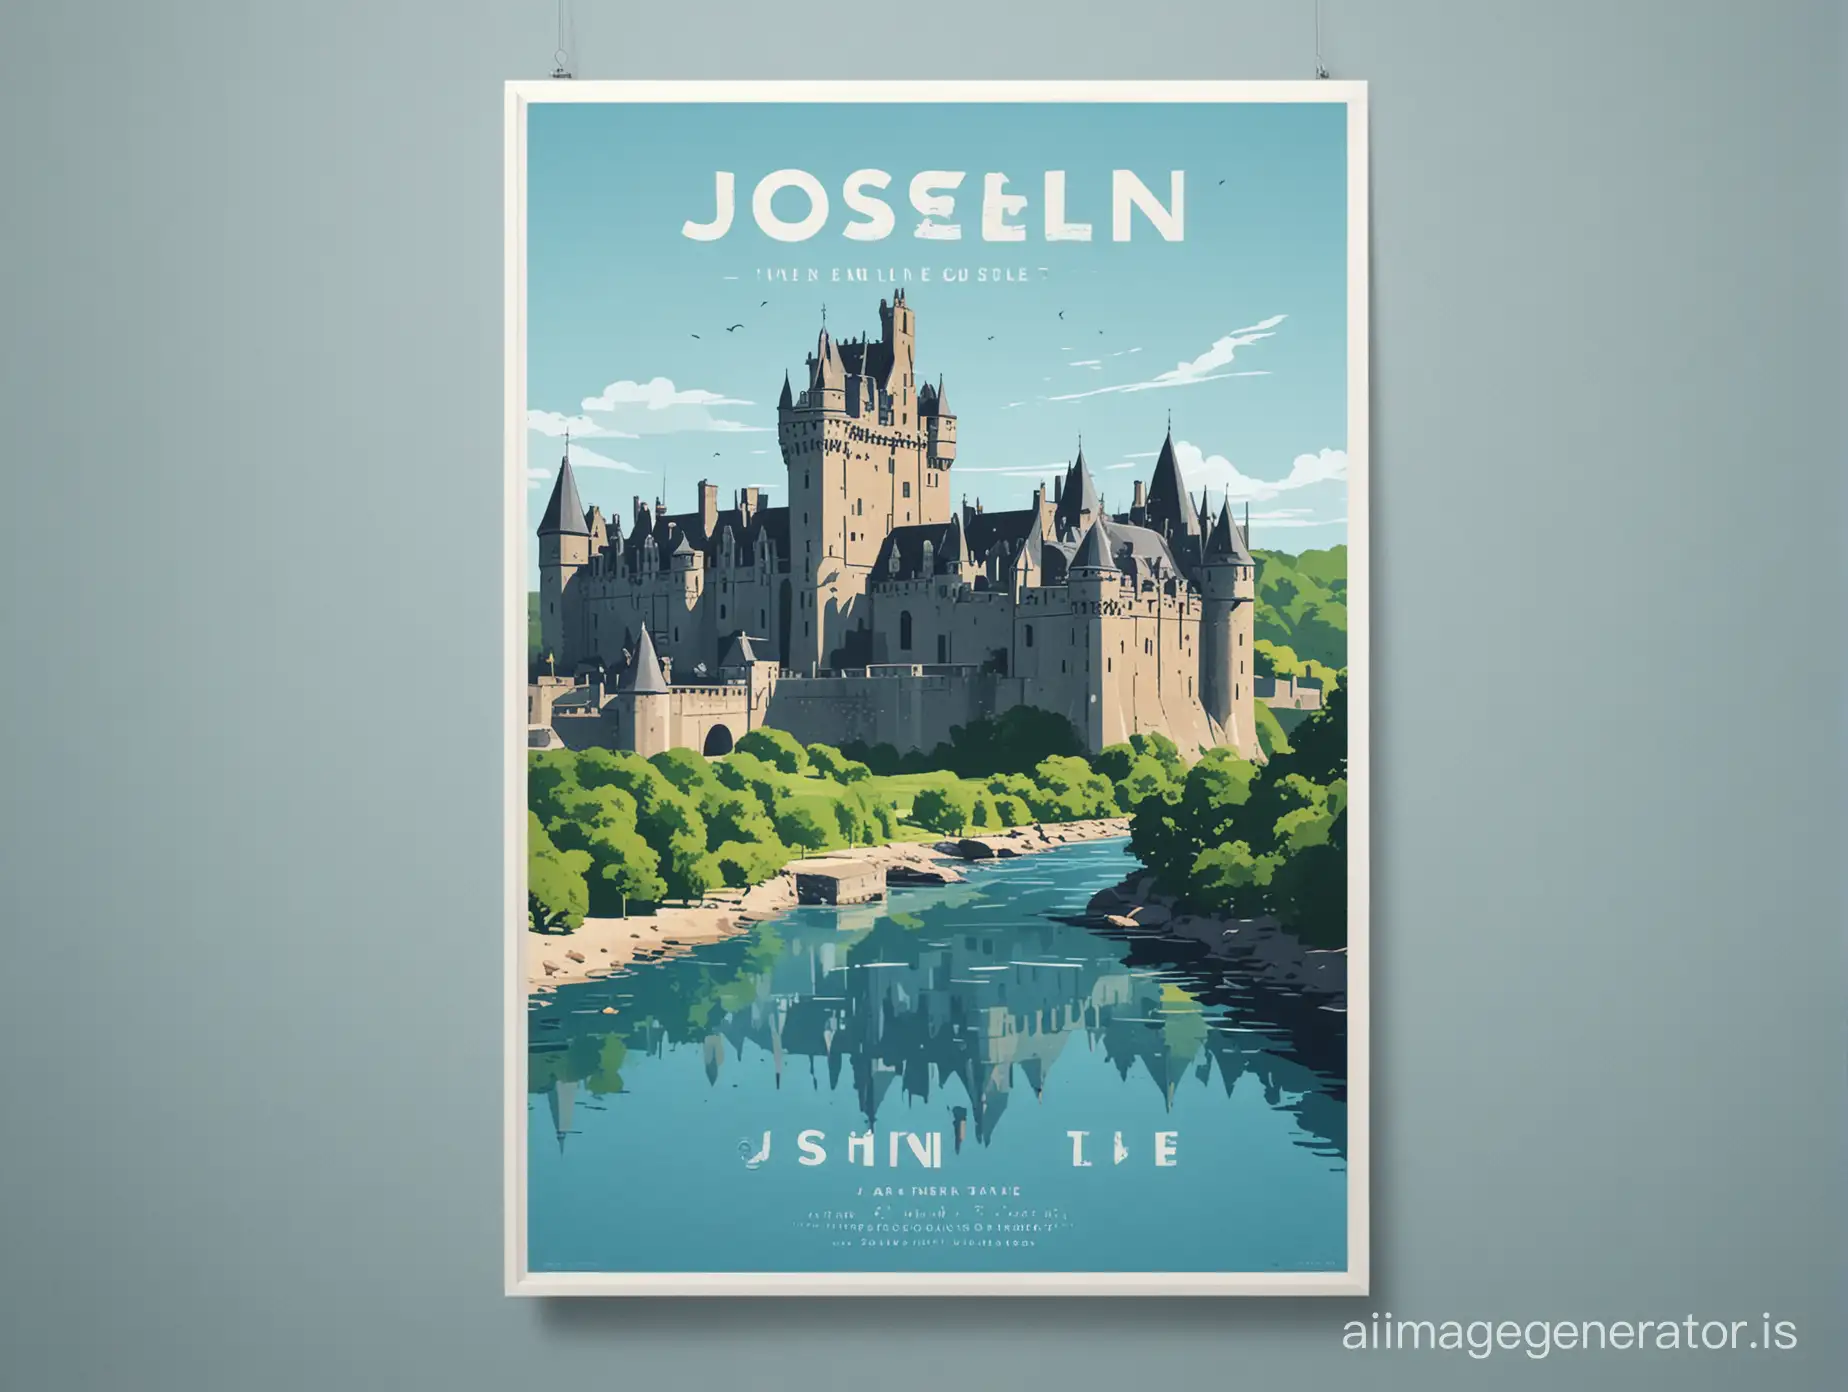 Minimalist-Flat-Design-Poster-of-Josselin-Castle-by-the-Blue-River-in-Summer